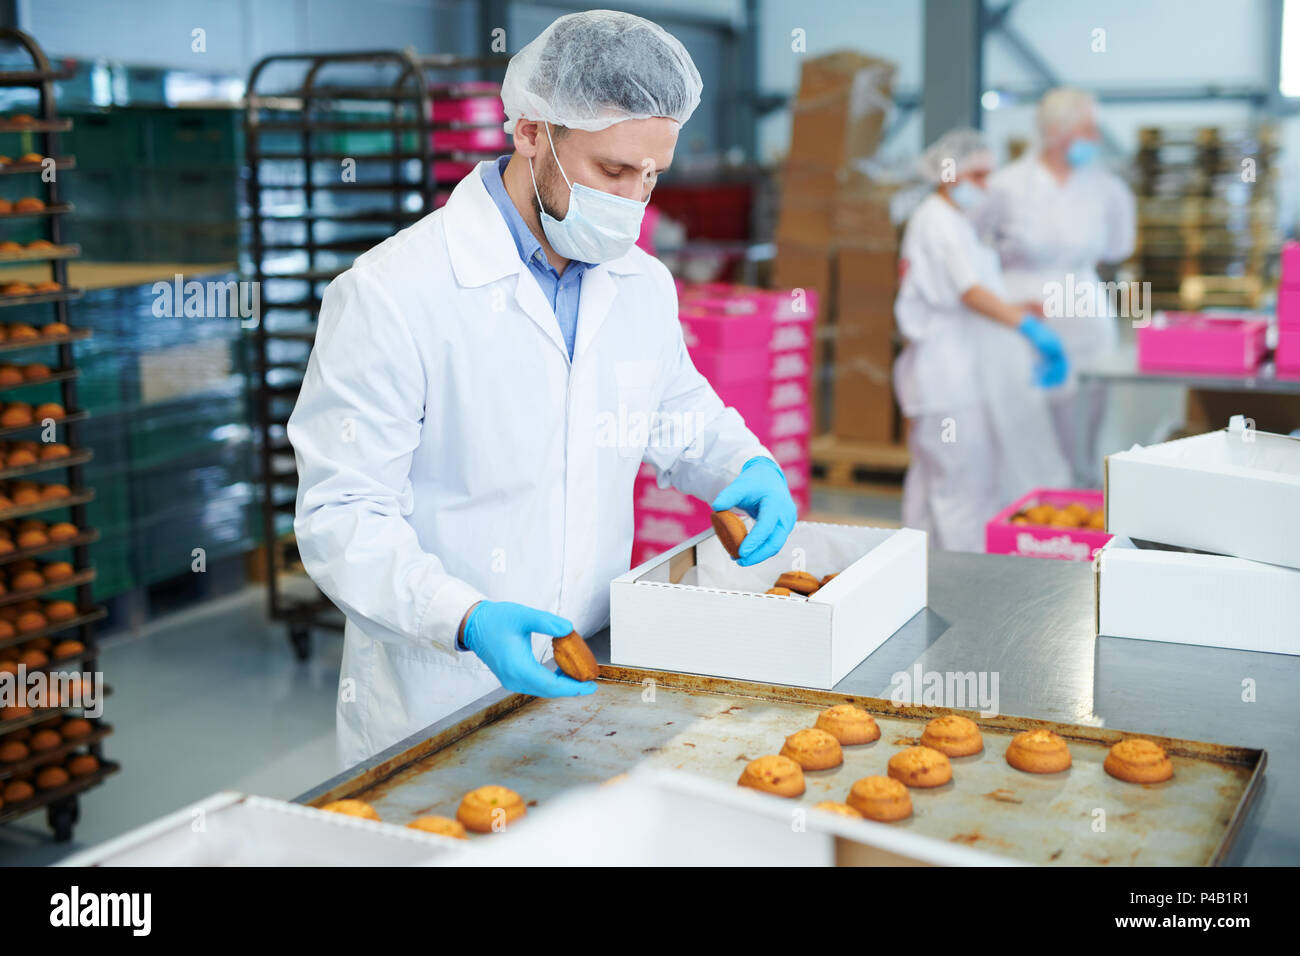 Trabajador de una fábrica de confitería pastelería de embalaje en la caja Foto de stock